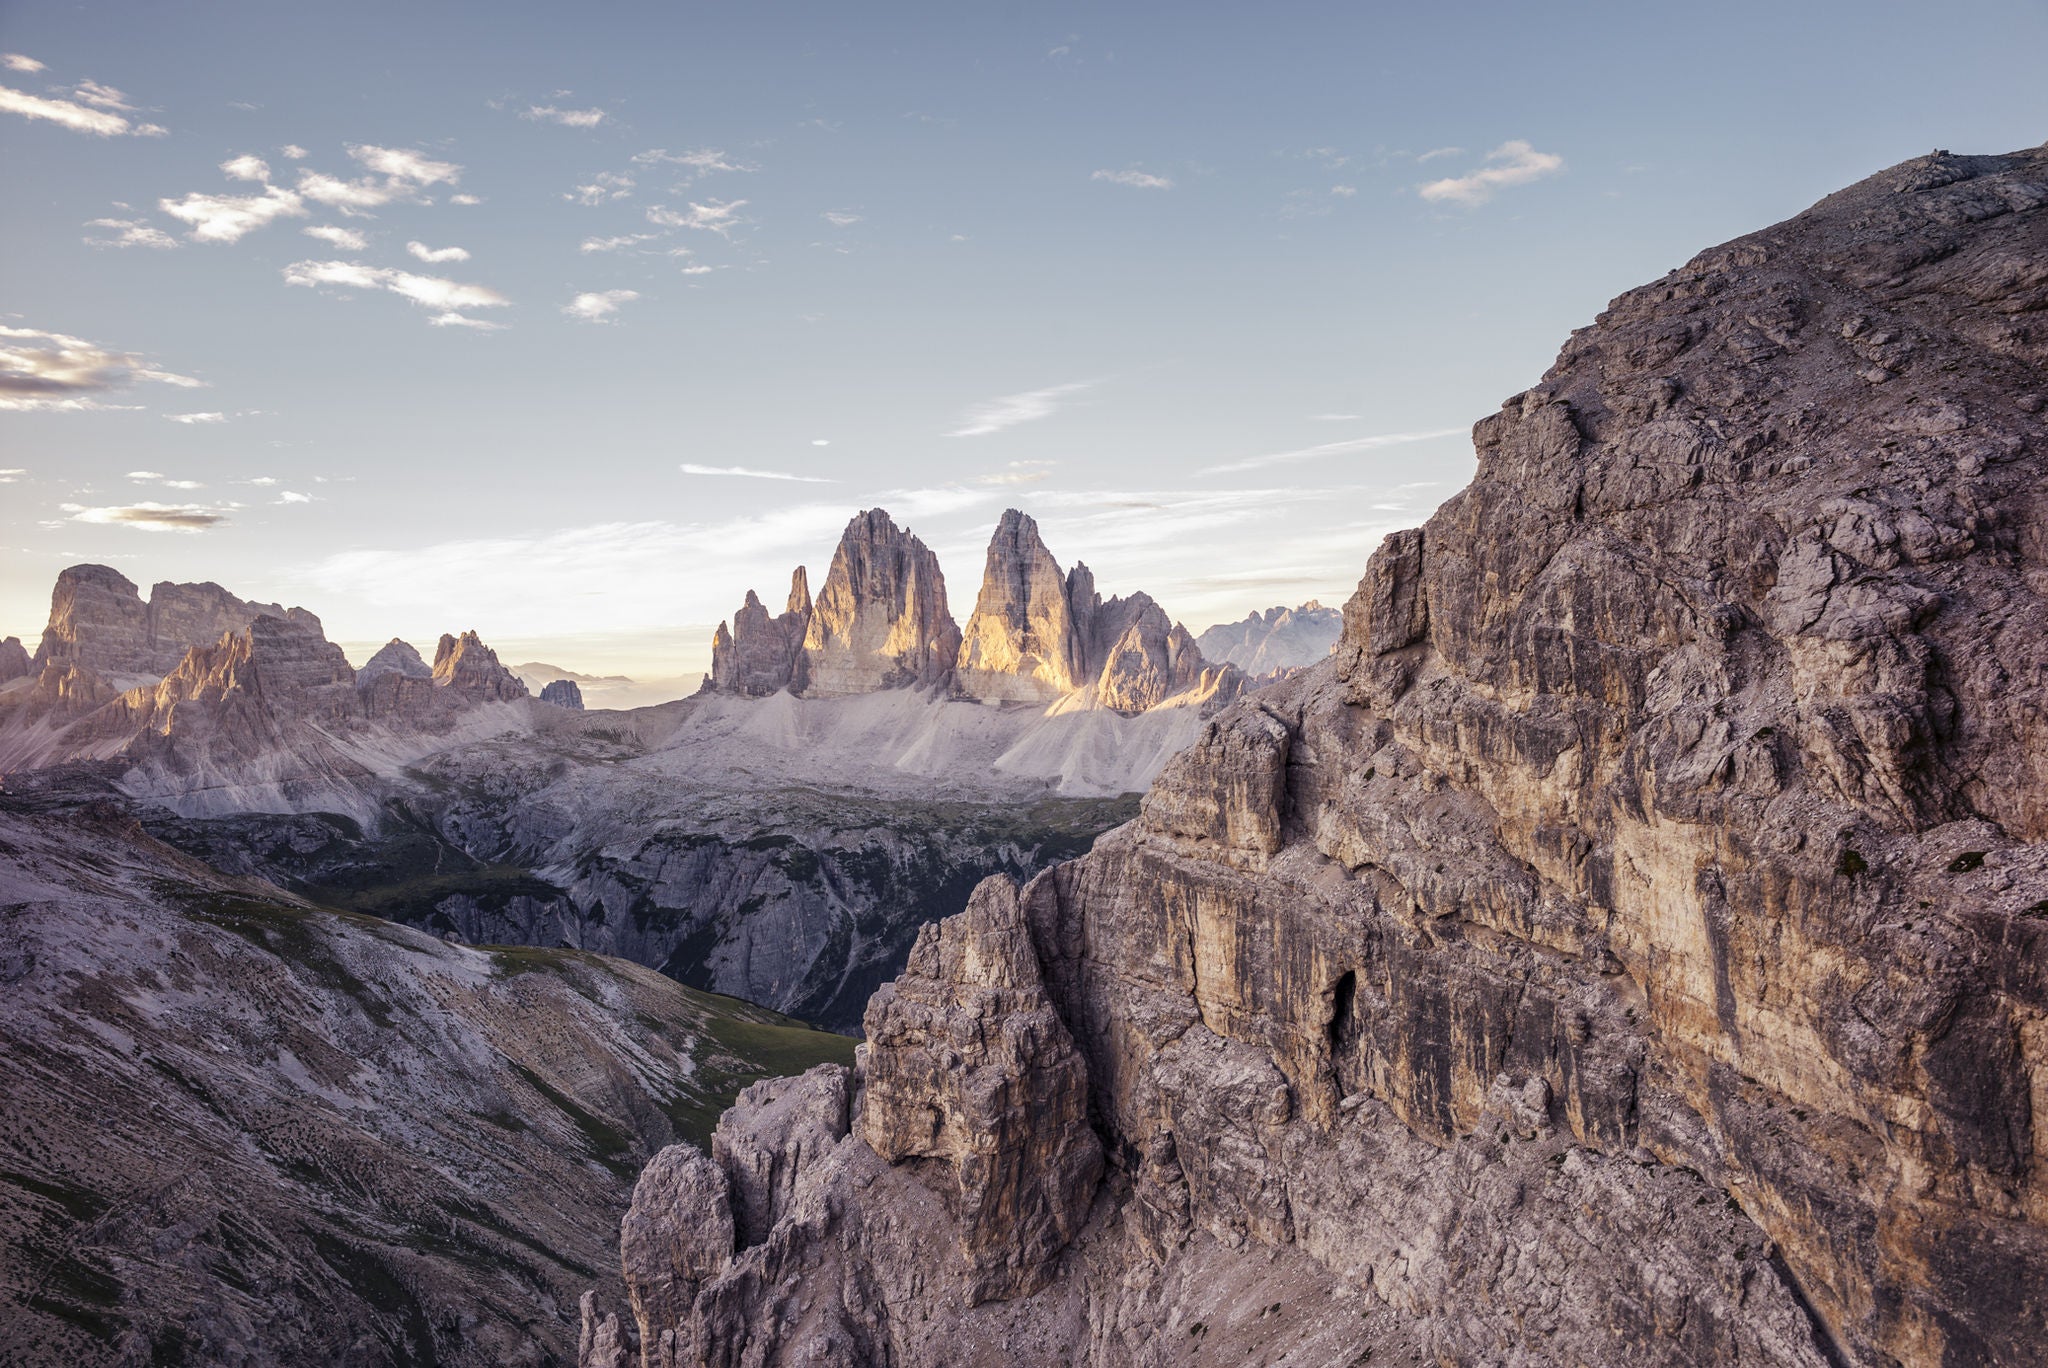 Blick auf das Bergpanorama der Dolomiten mit der majestätischen Formation der Drei Zinnen in der Bildmitte, von Sonne beschienen. 